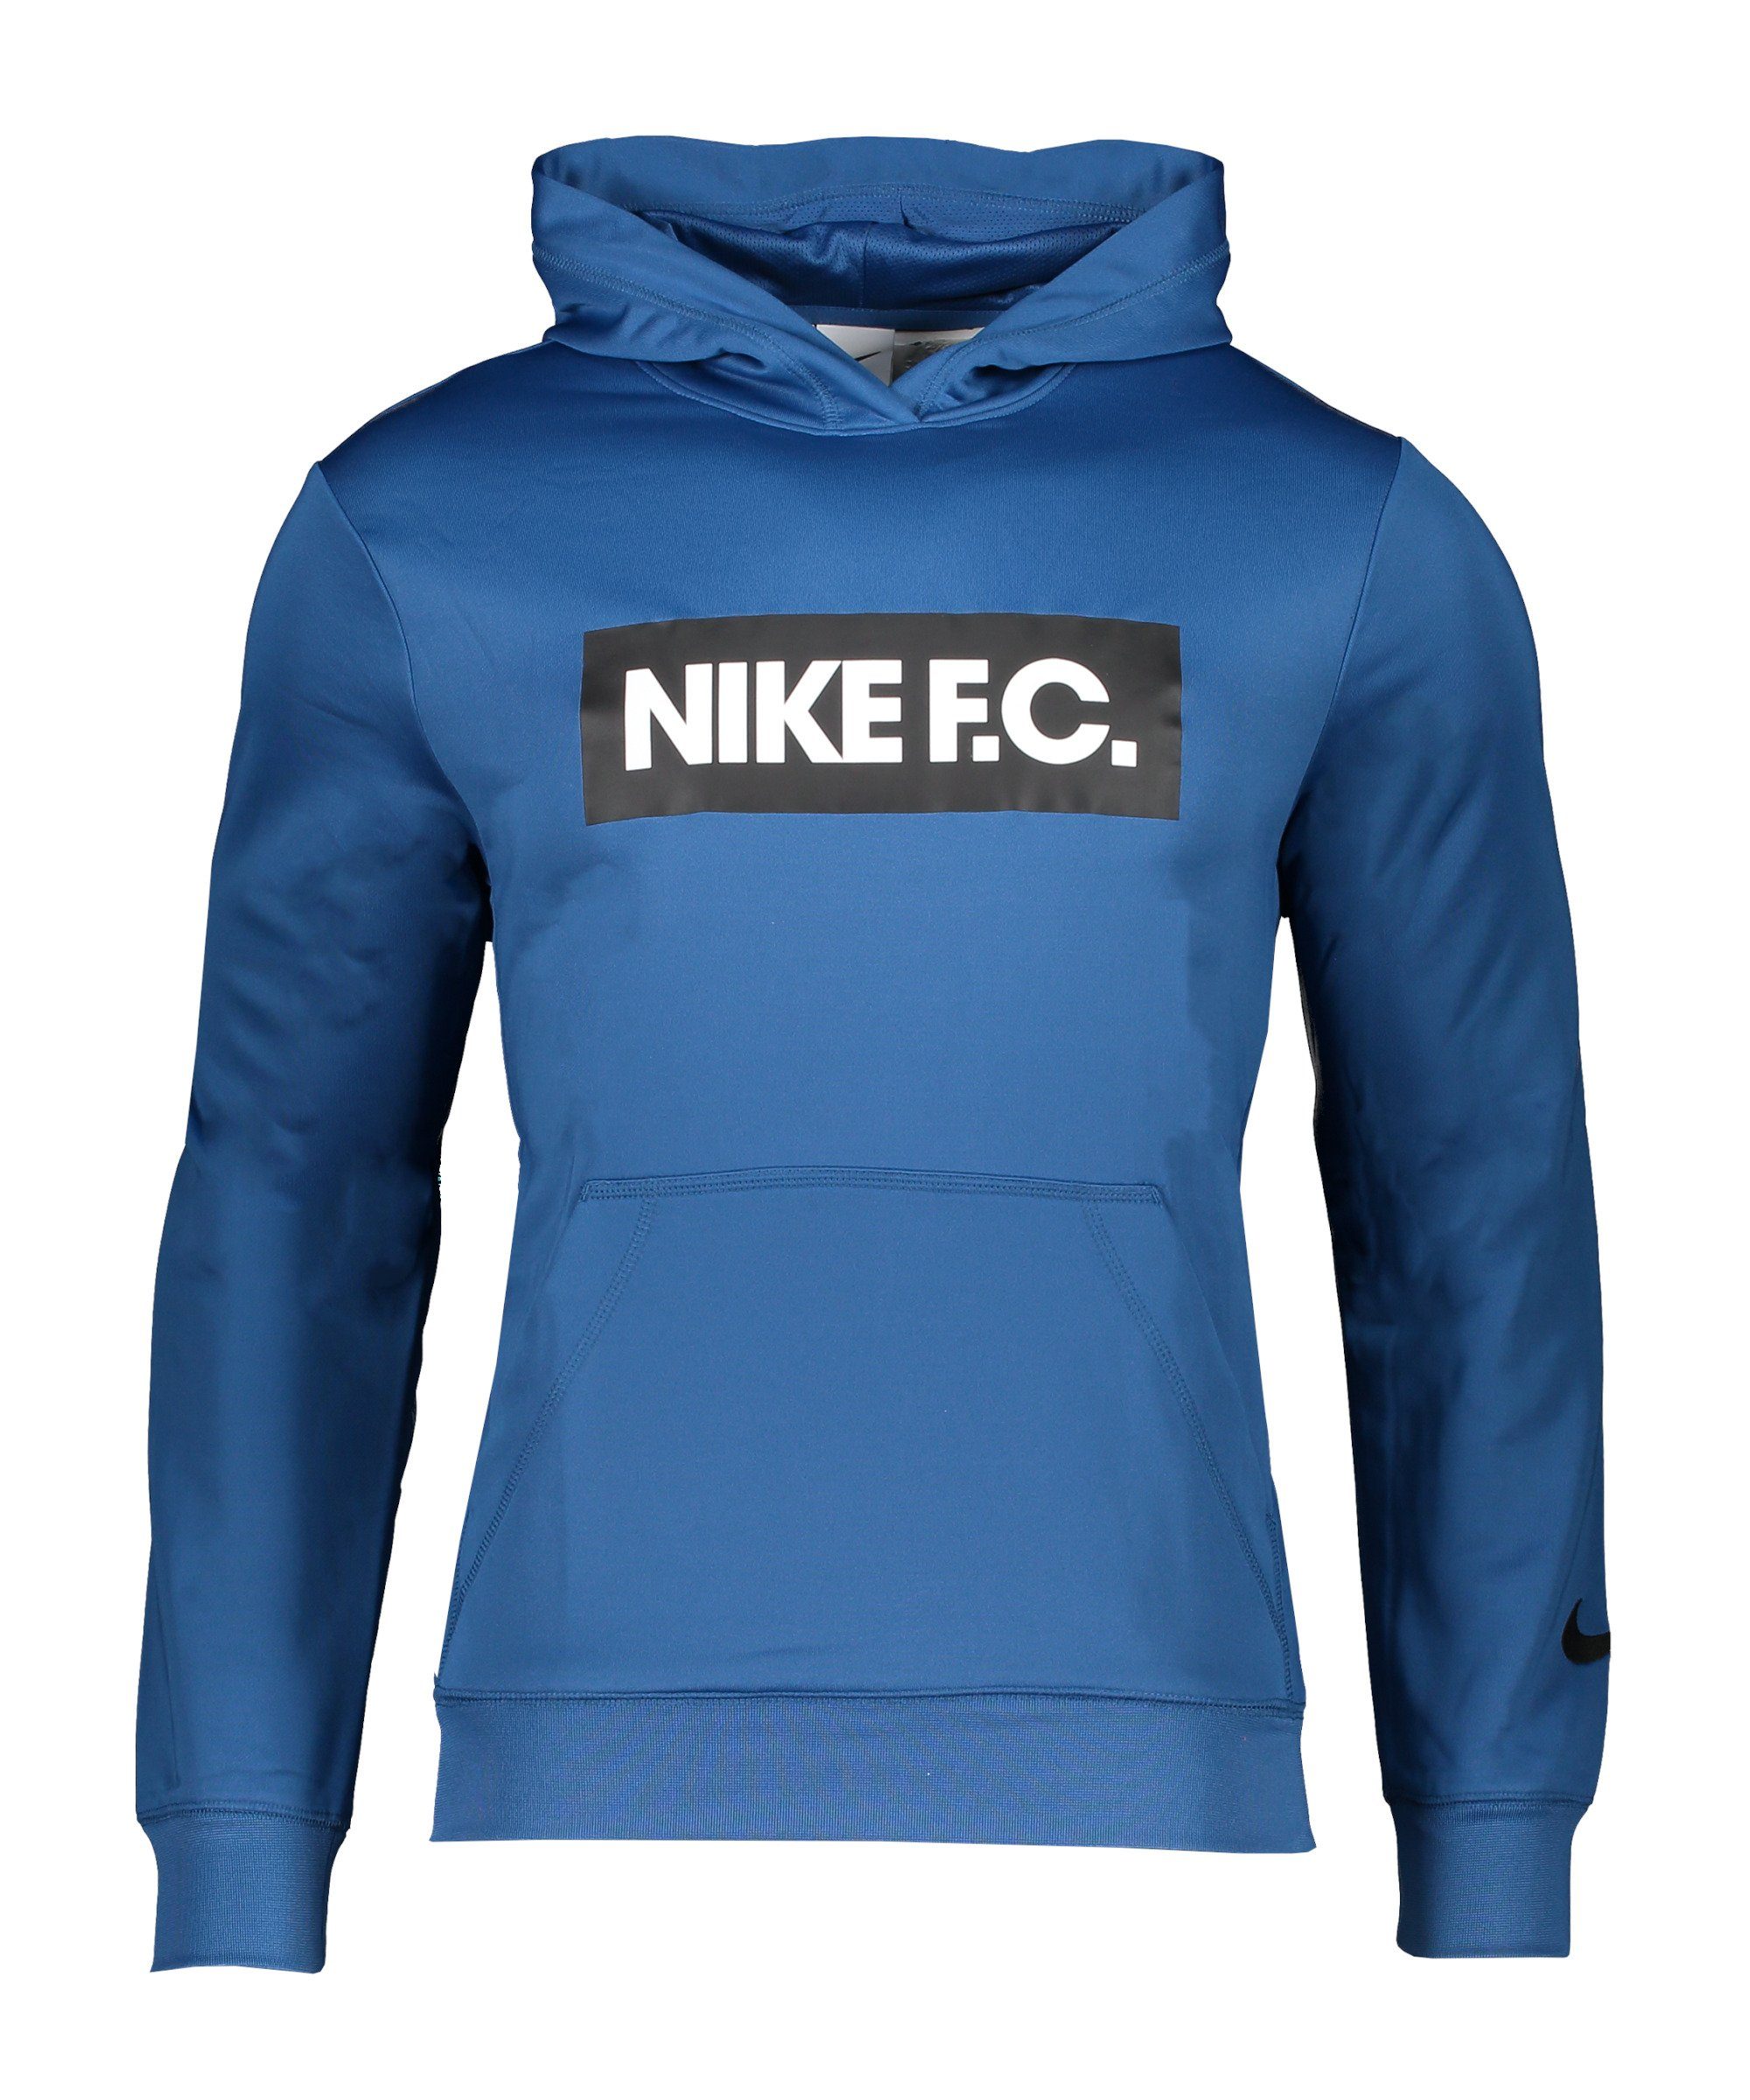 Nike Sportswear Sweatshirt F.C. Fleece Hoody blauweissschwarz